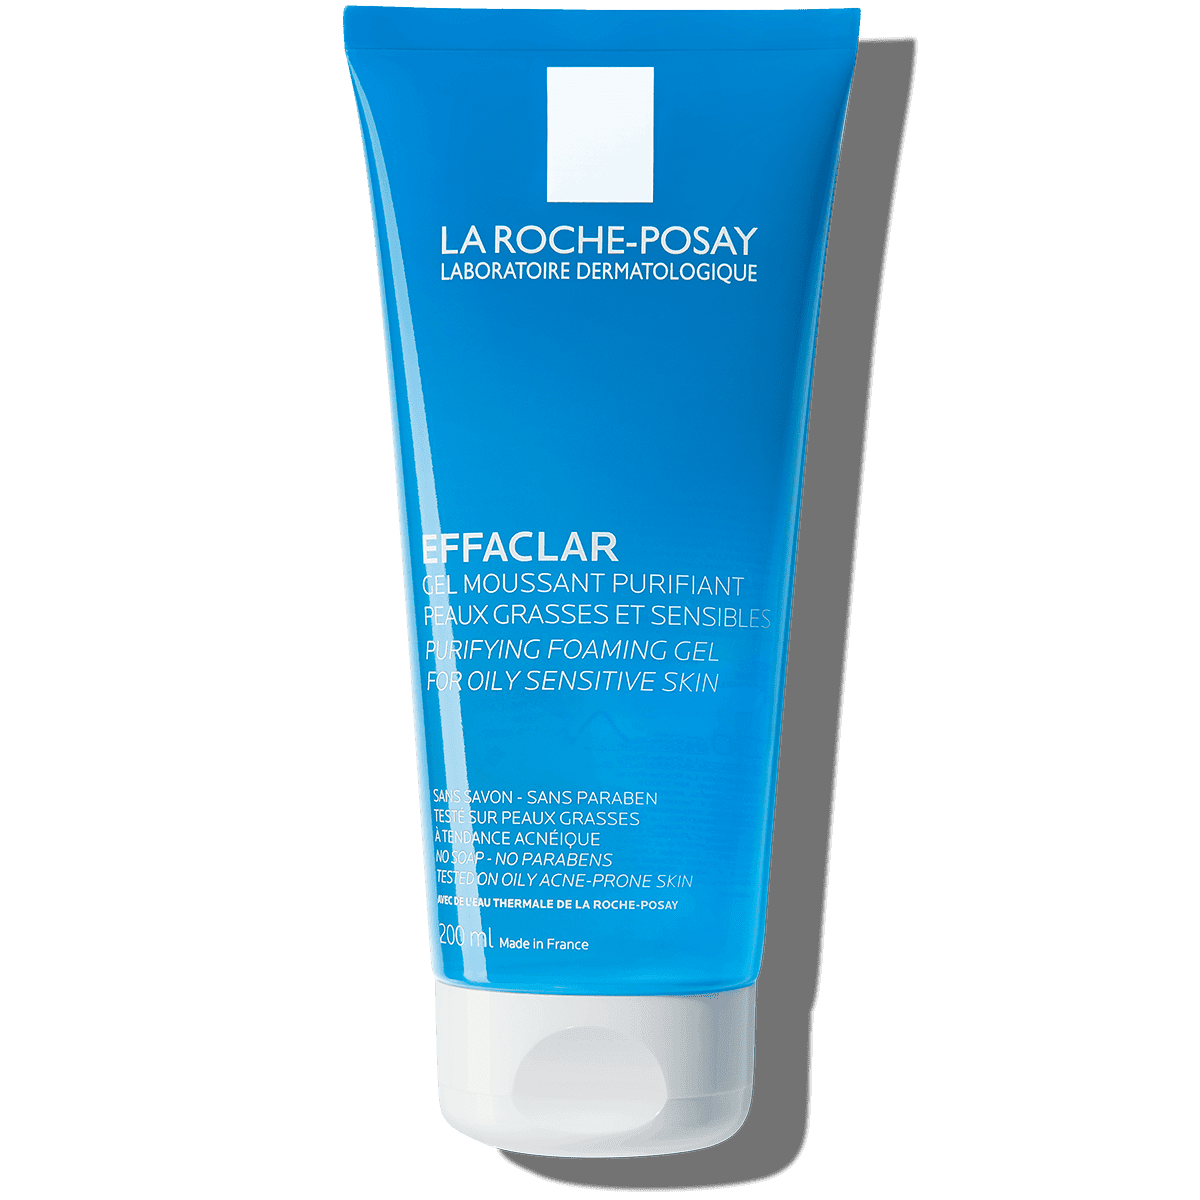 La Roche-Posay Effaclar Purifying Foaming Gel For Oily Sensitive Skin là dòng sữa rửa mặt cho da dầu mụn được ưu tiên